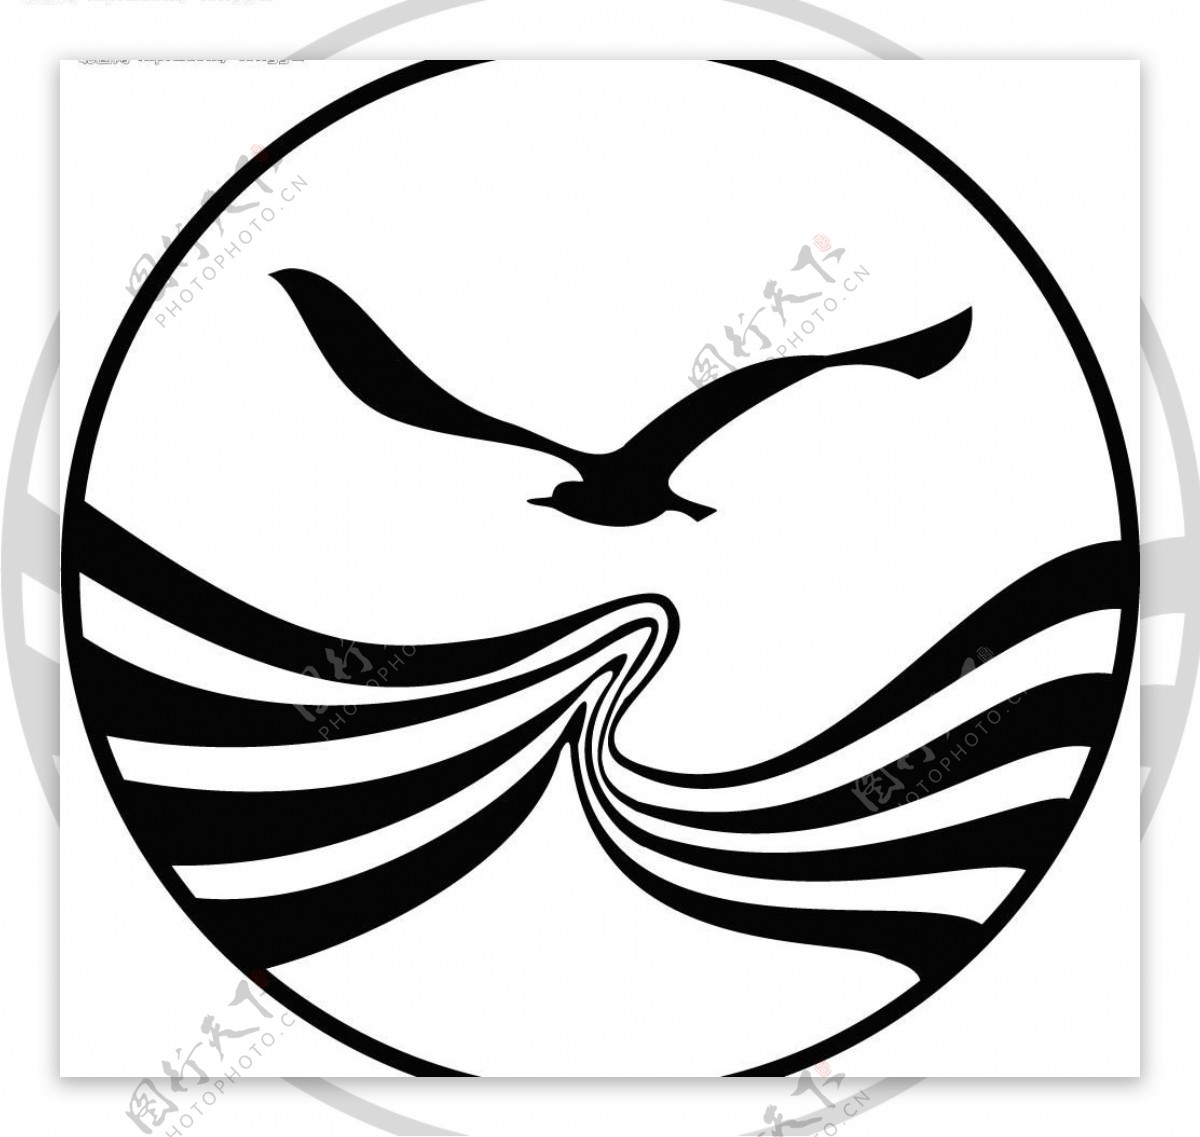 四川航空logo图片